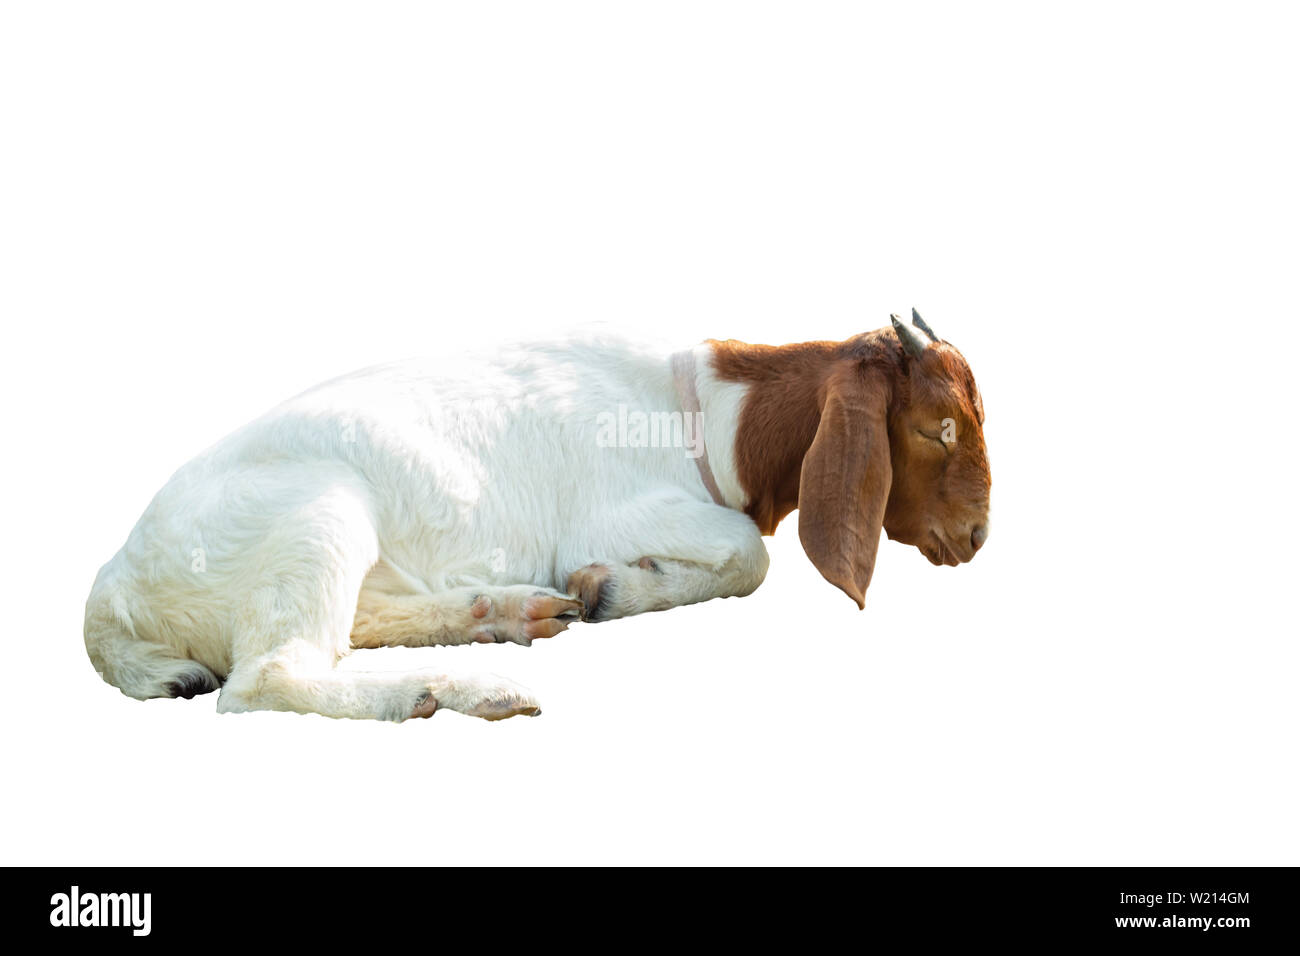 Les chèvres sont isolés de dormir sur un fond blanc avec chemin de détourage. Banque D'Images